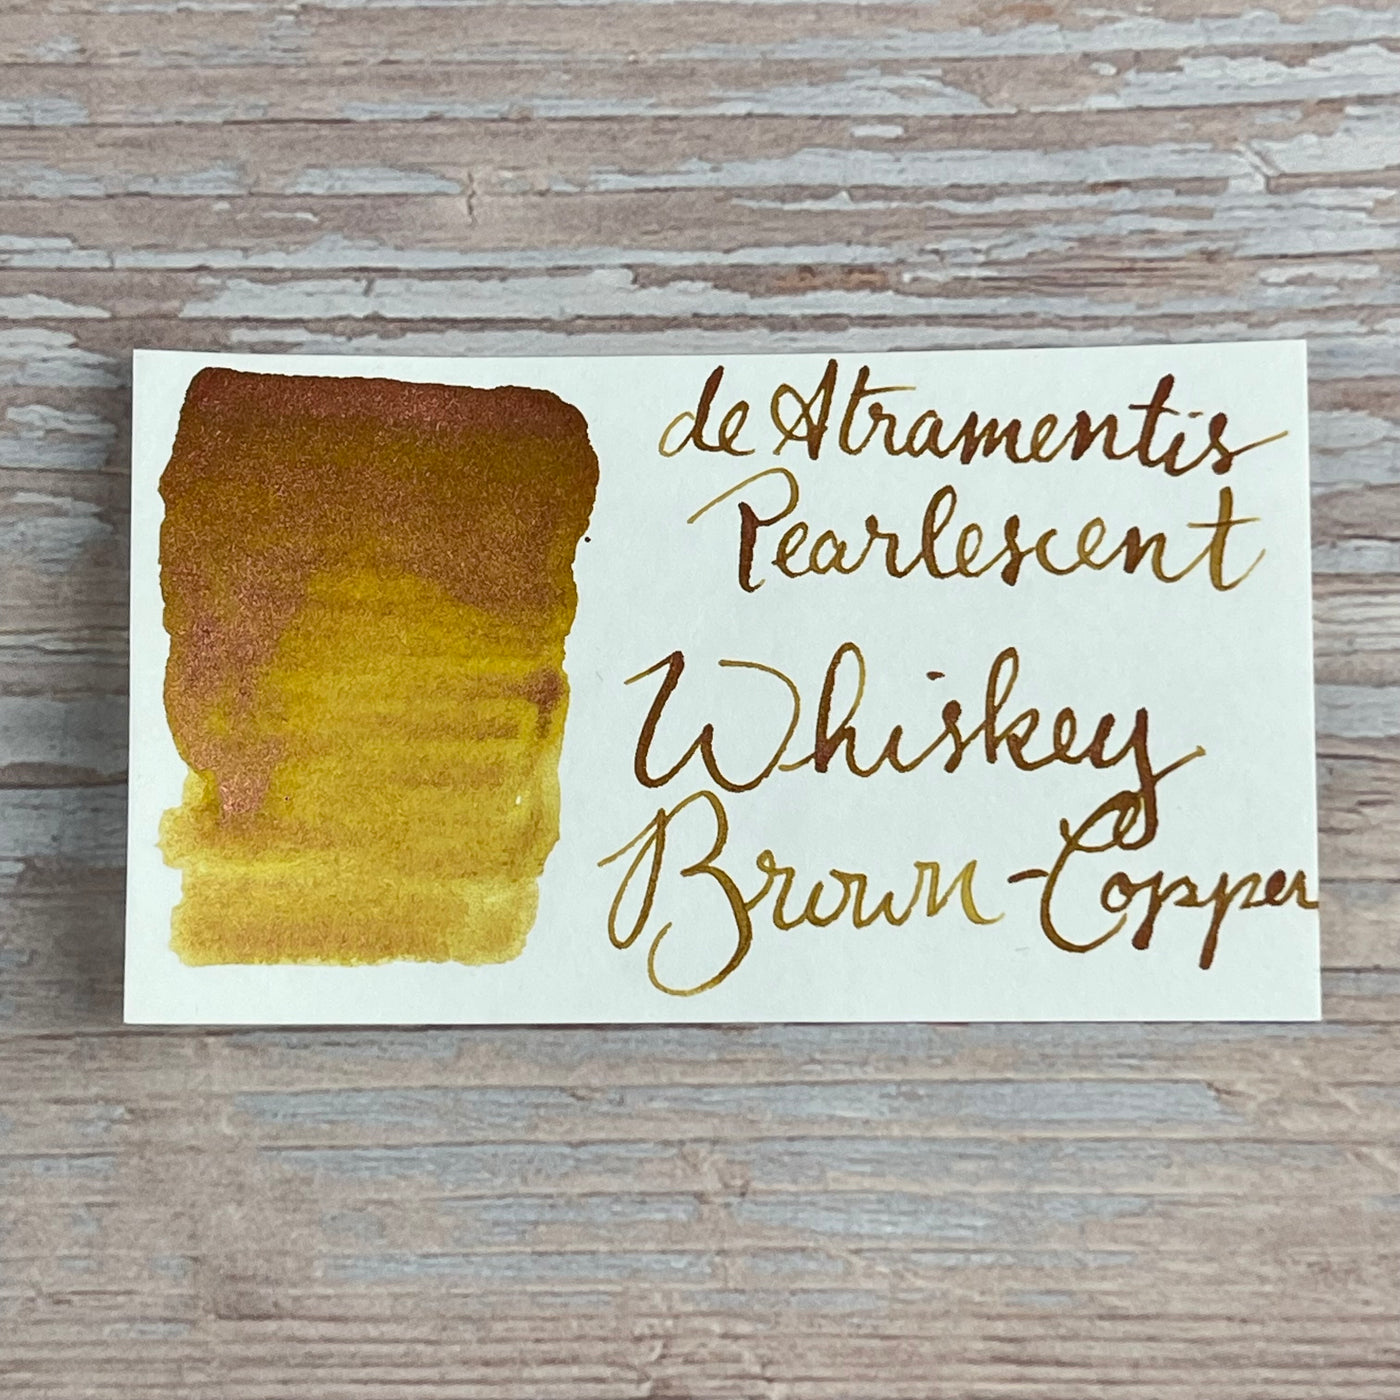 De Atramentis Pearlescent Whisky Brown Copper- 45ml Bottled ink